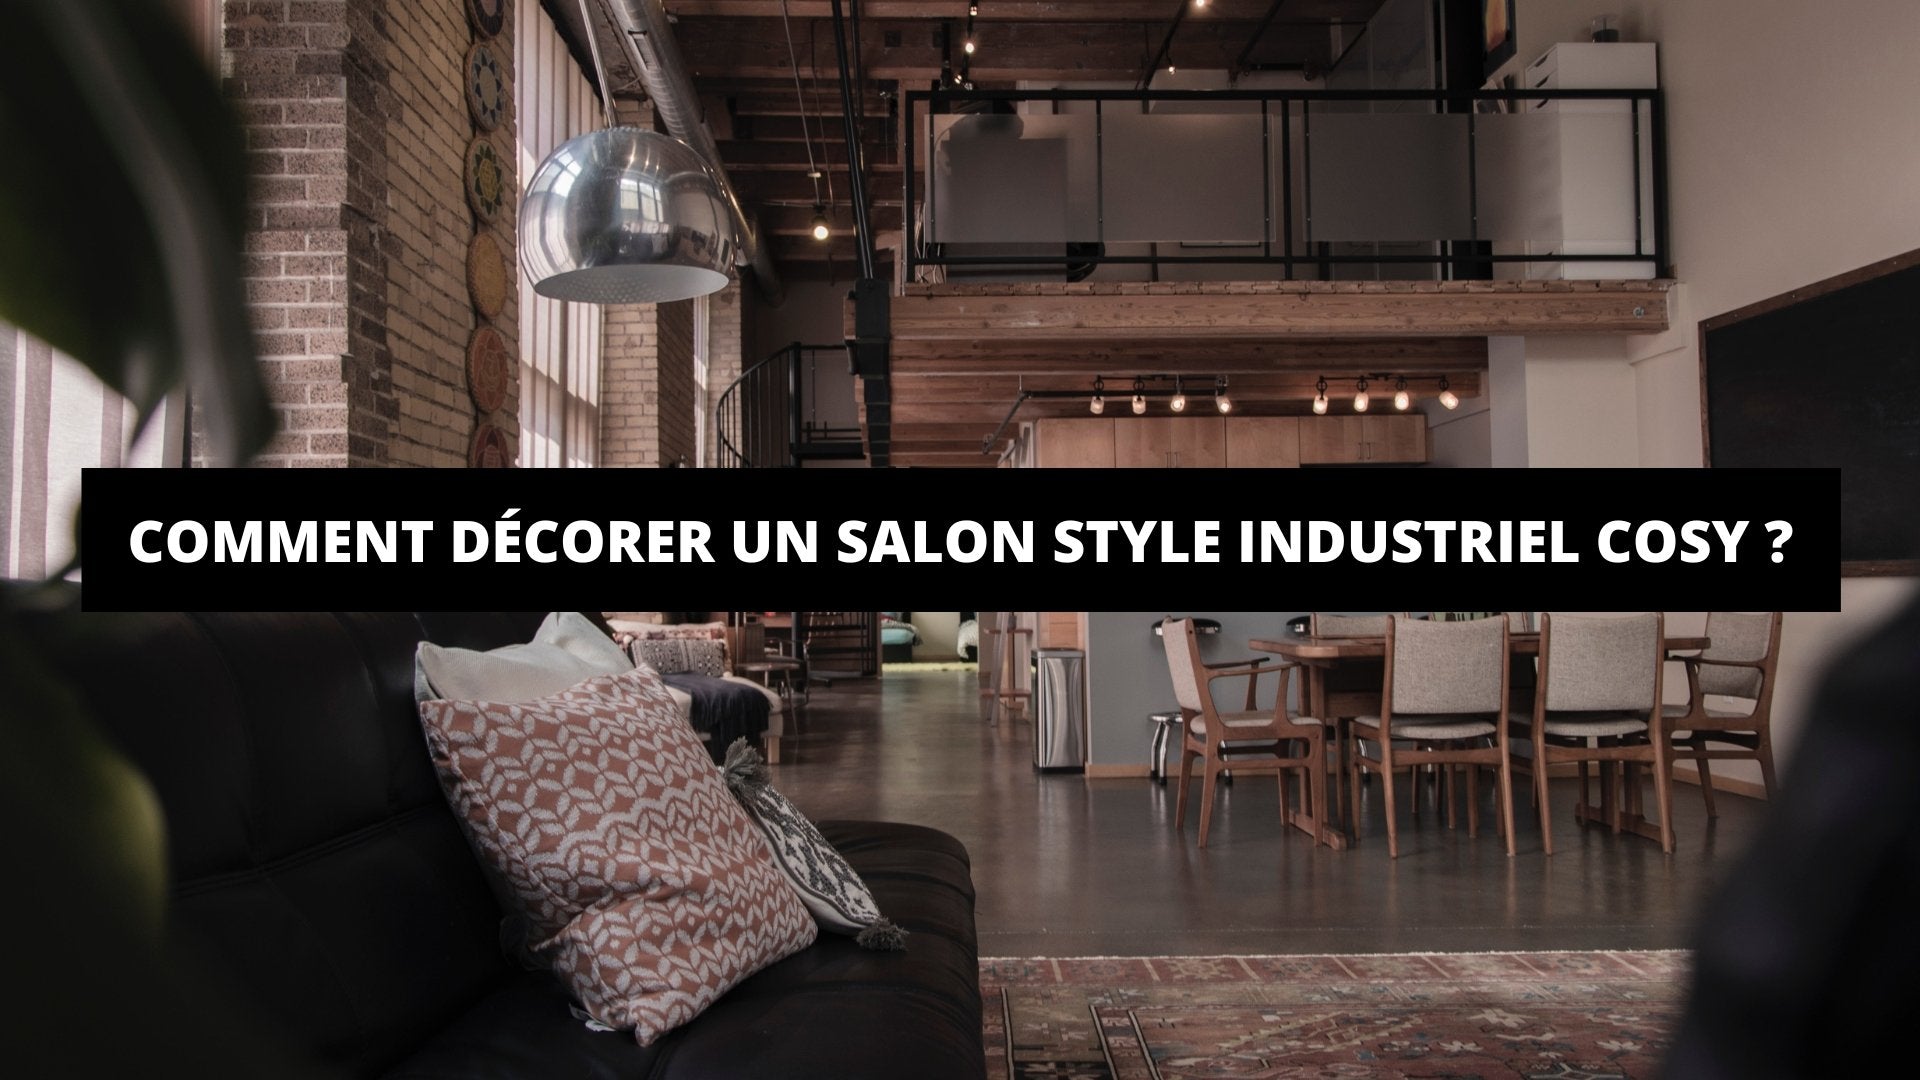 Comment Décorer Un Salon Style Industriel Cosy ? - The Art Avenue